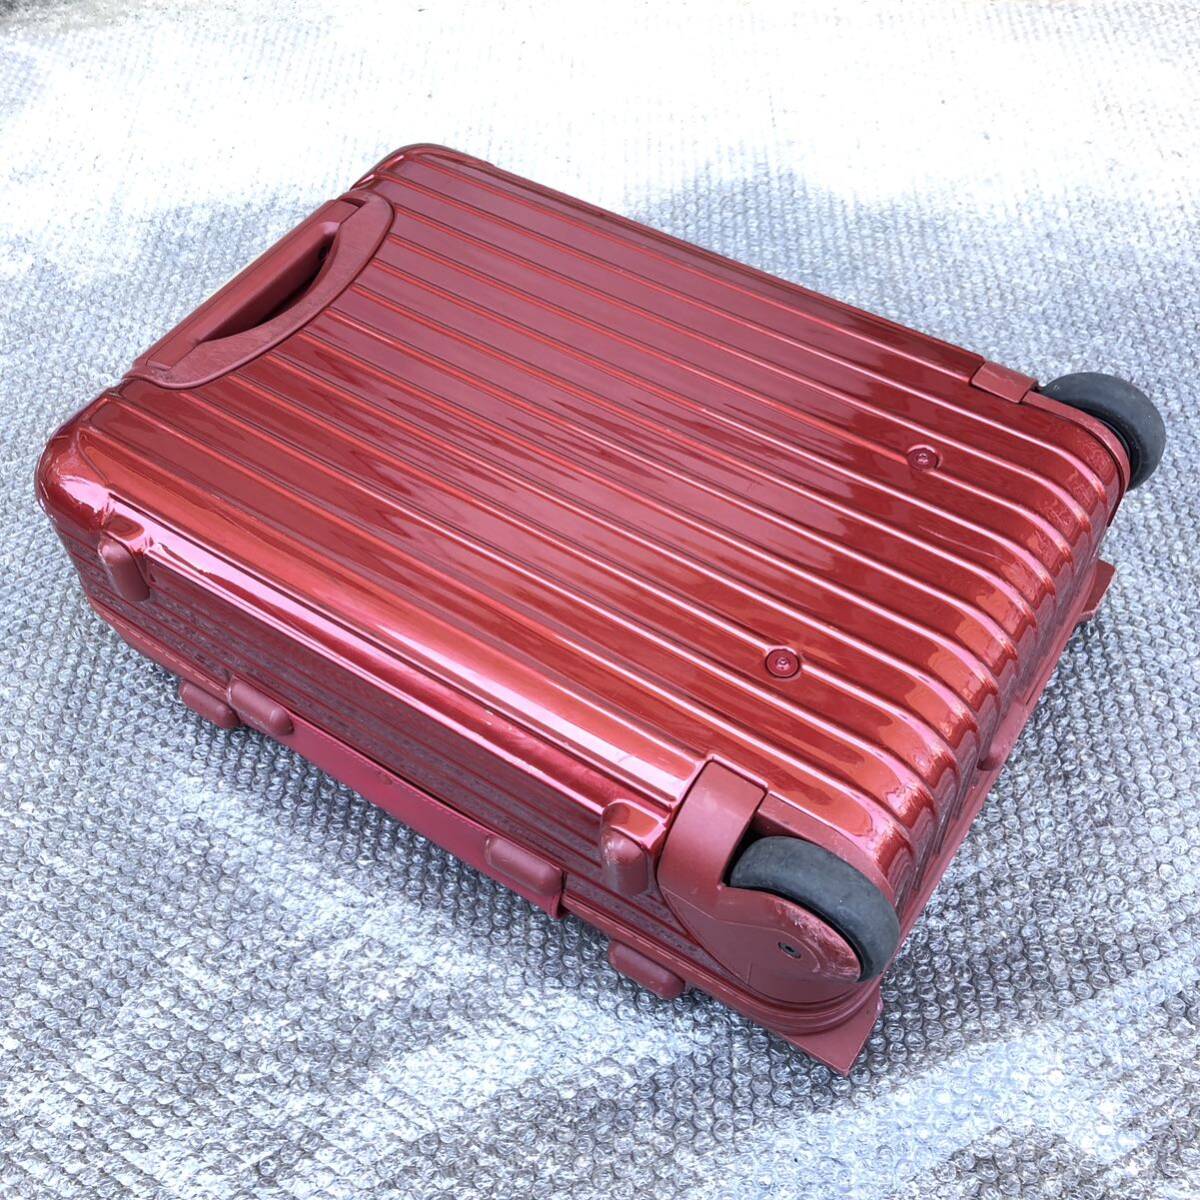 【リモワ】本物 RIMOWA スーツケース SALSA DELUXE サルサデラックス 853 52 TSAロック 2輪 キャリーケース 35L 赤色系 トラベルバッグ_画像6